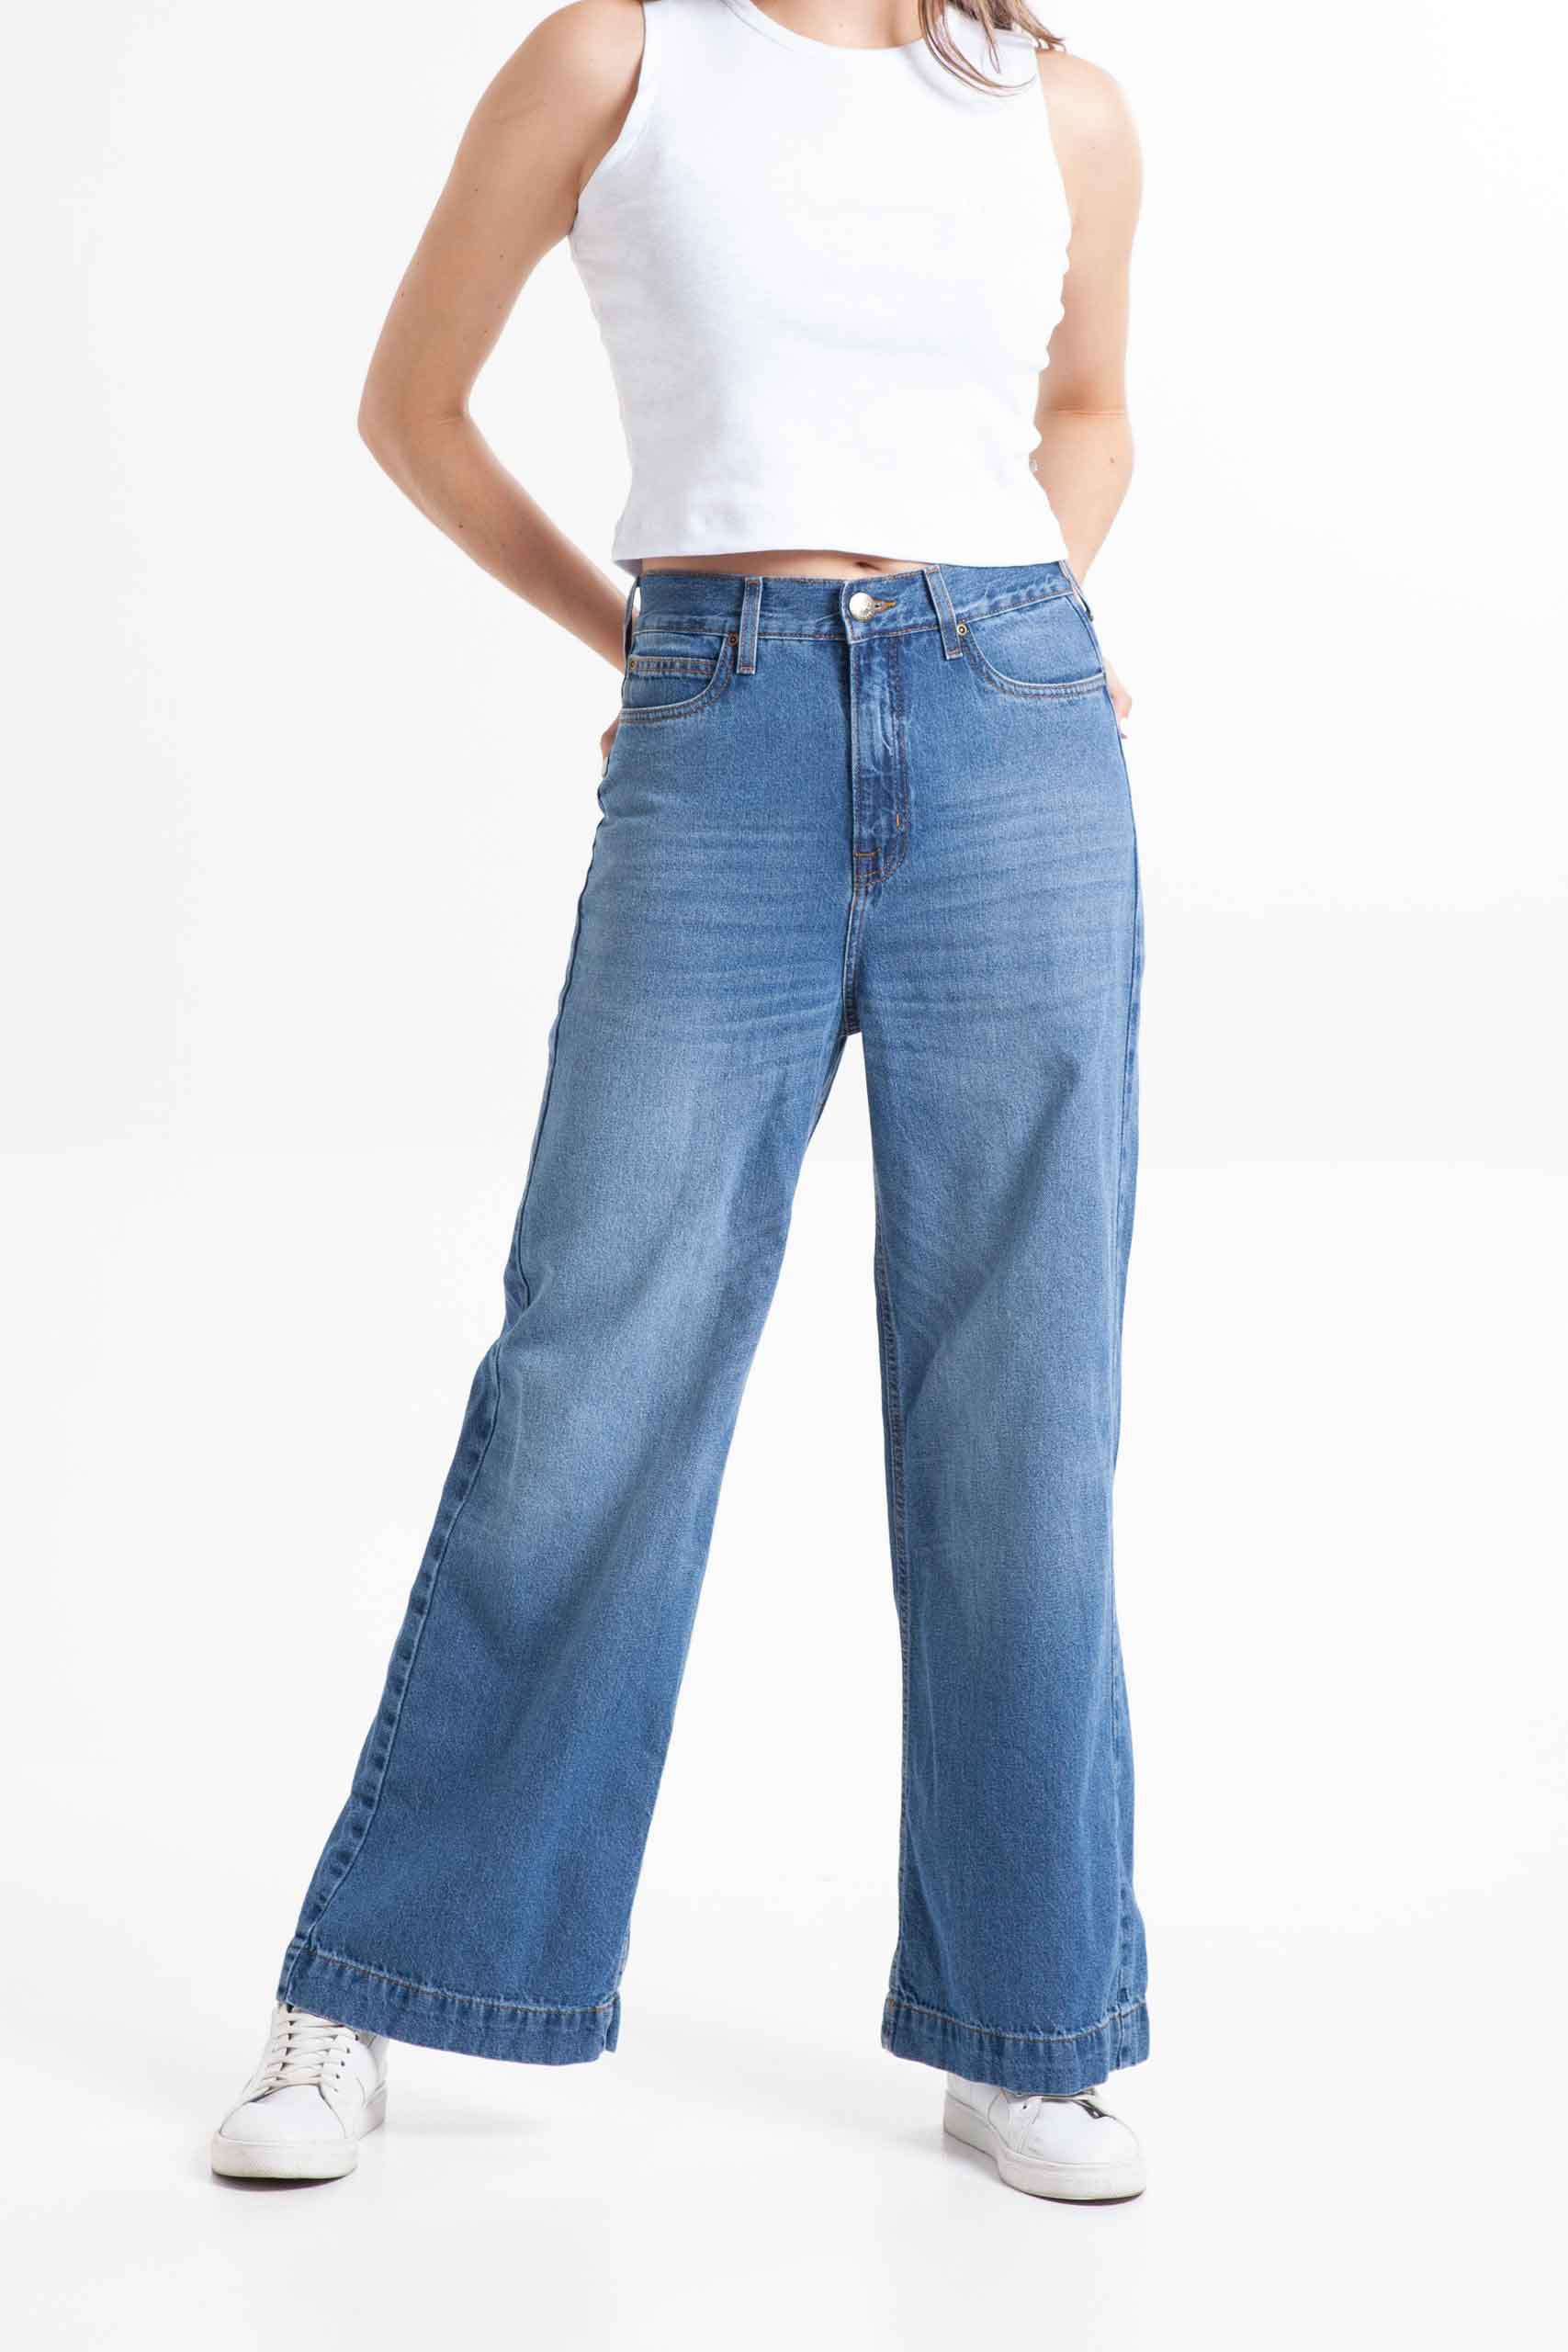 Vista frontal de jean de color azul de pierna ancha con bolsillos de marca lee